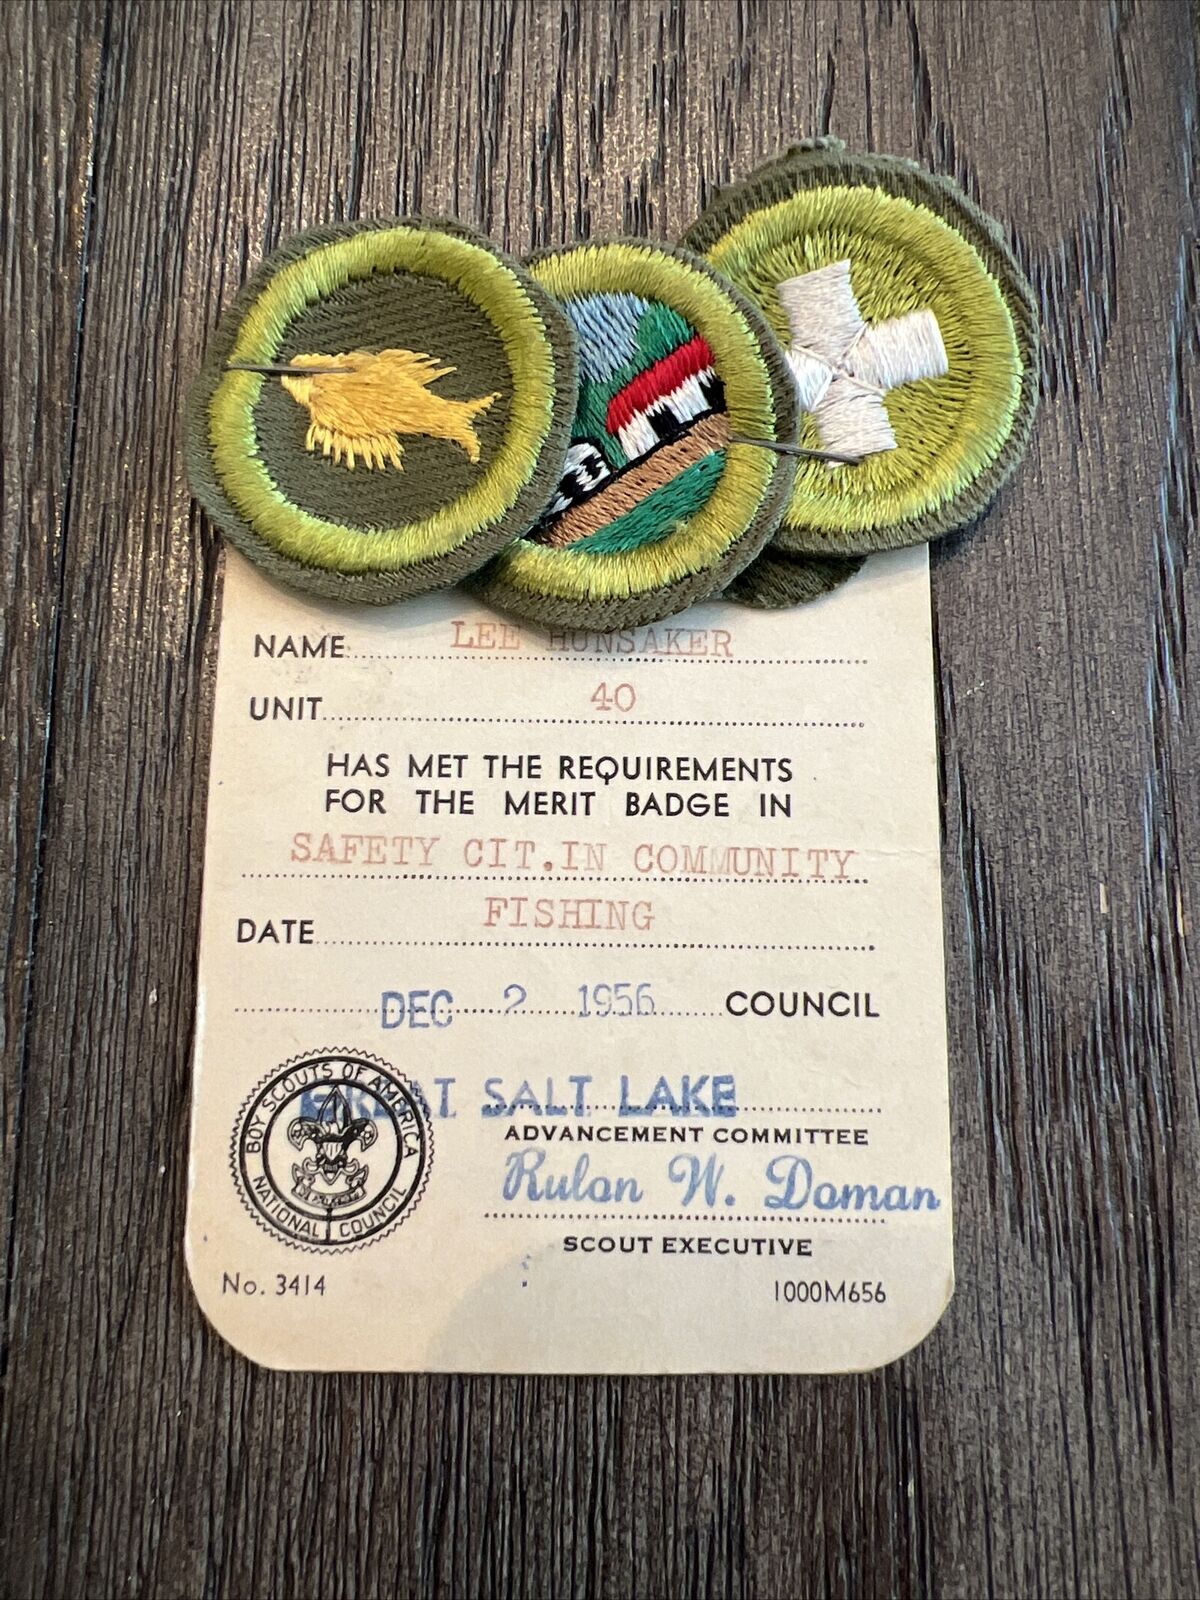 Vintage Boy Scouts 1956 Fishing, Safety, BSA Registration Card & Merit Badges